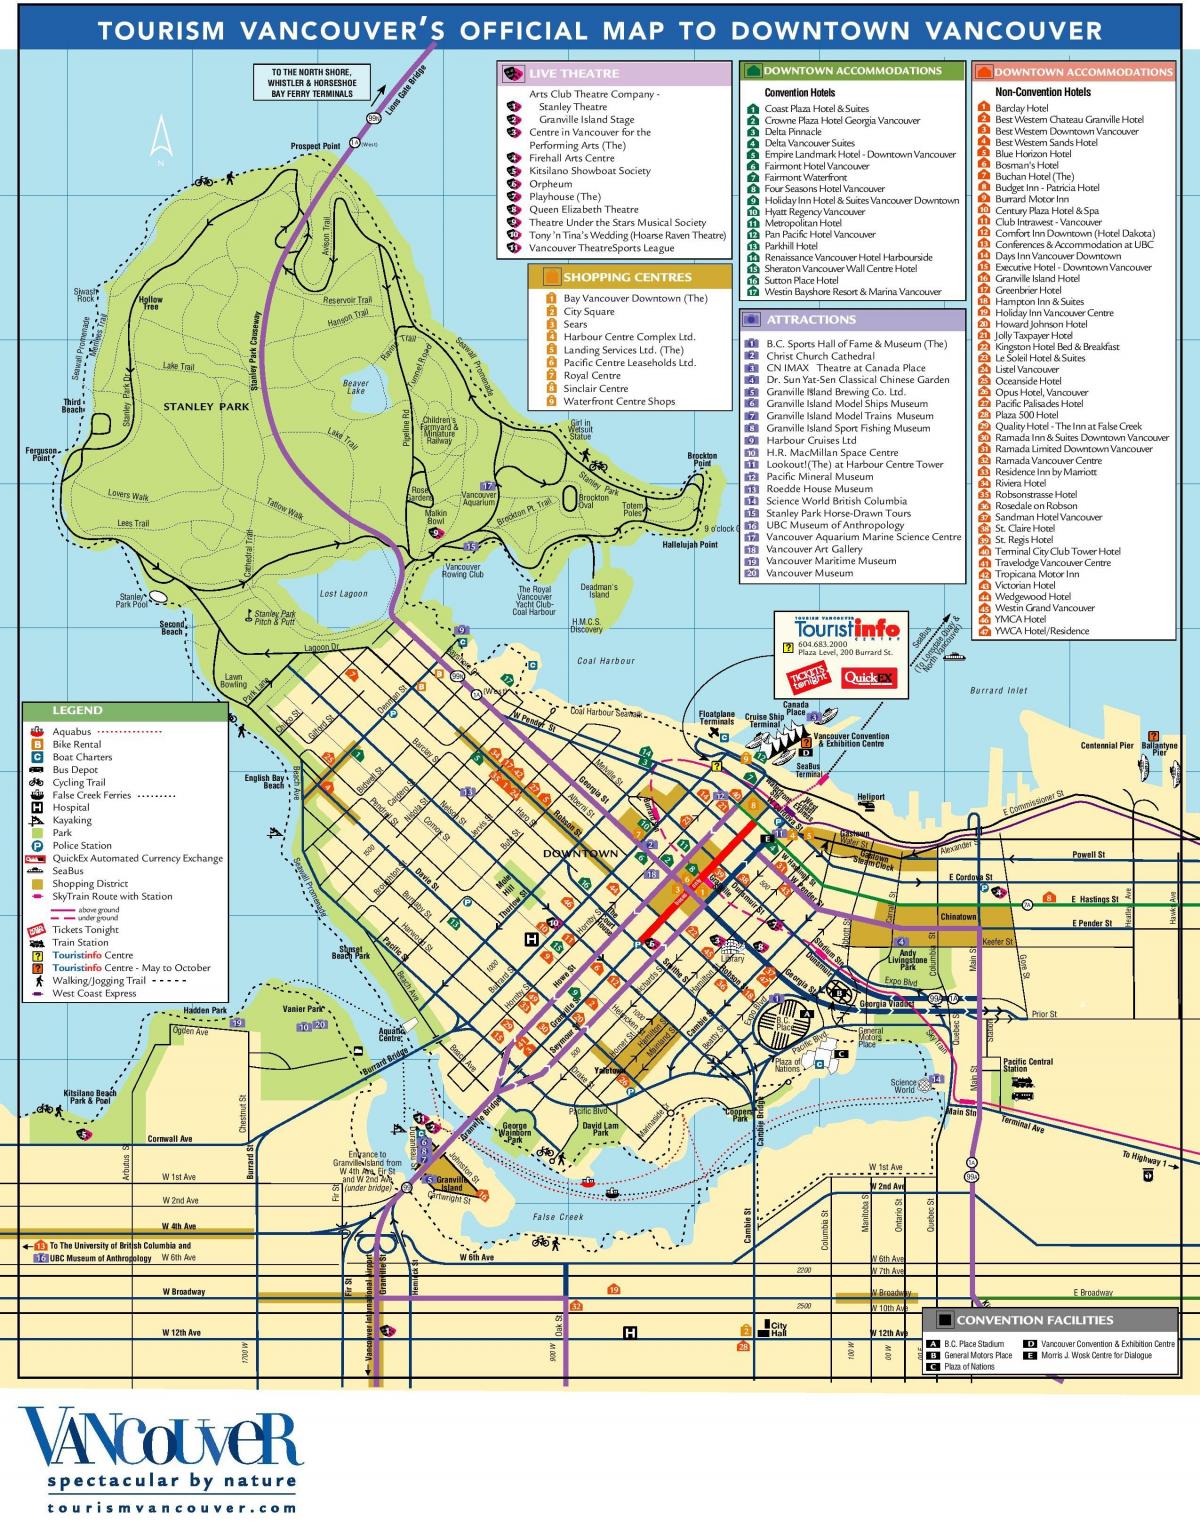 वैंकूवर में पर्यटकों के आकर्षण का नक्शा